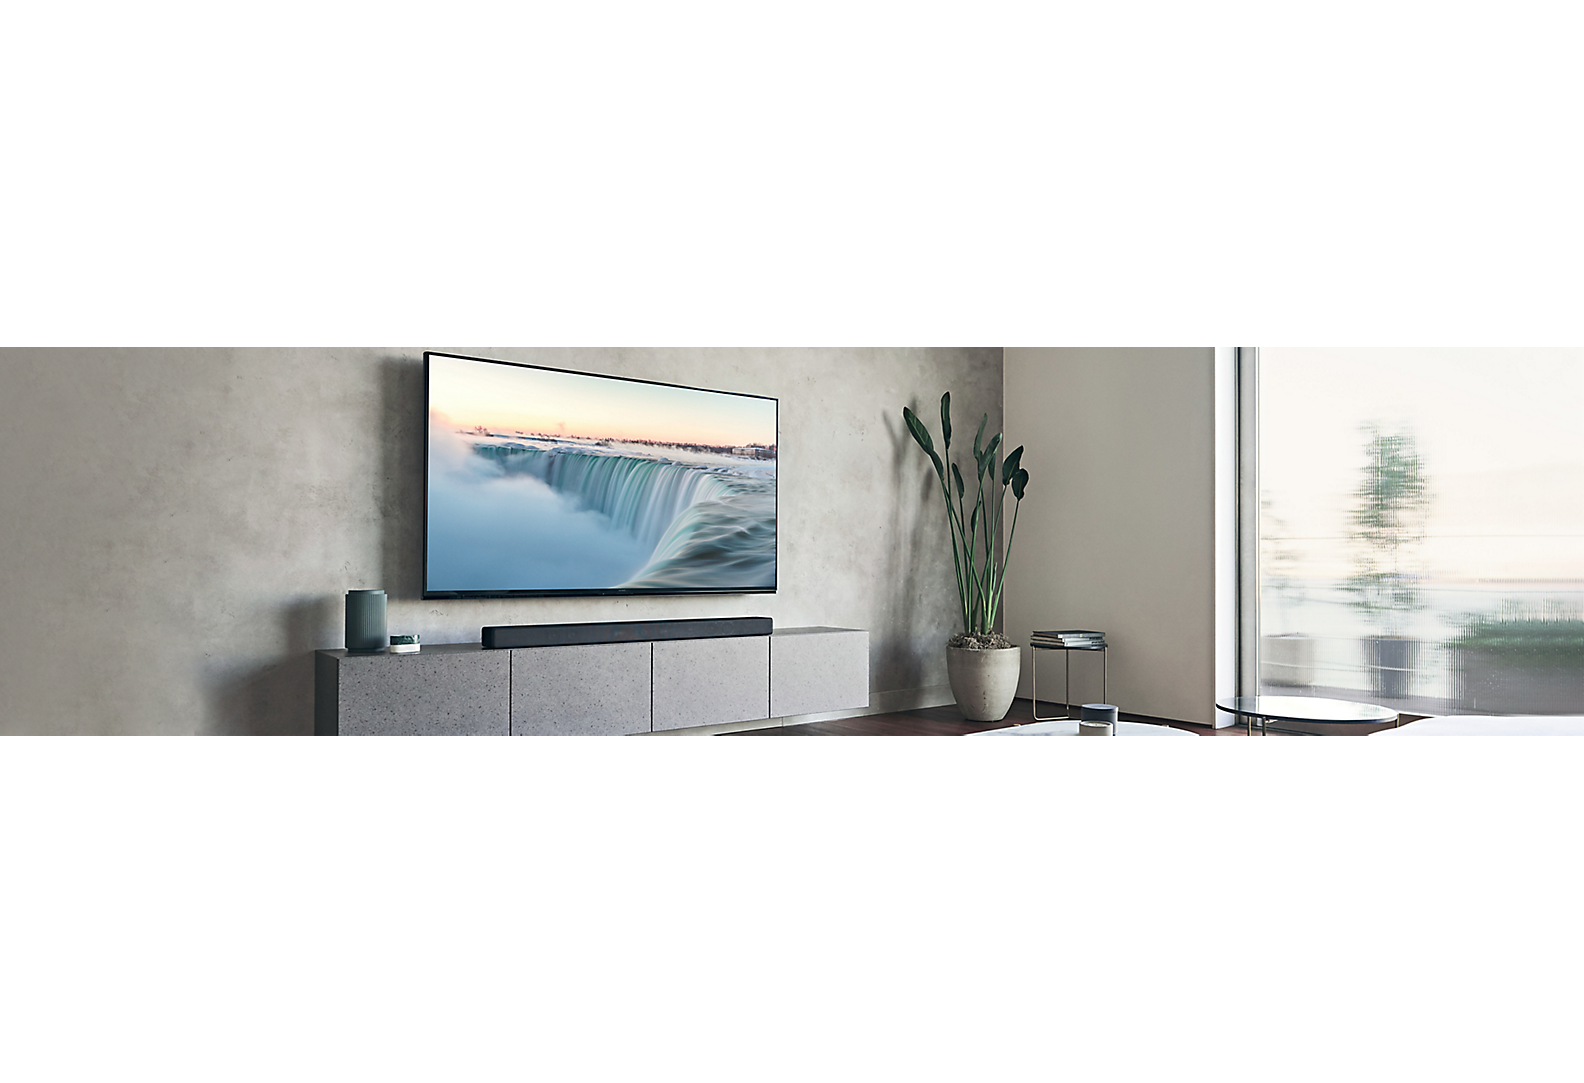 تلفزيون مُثبت على جدار رمادي في غرفة معيشة ذات لون رمادي مع عناصر ديكور مختلفة.